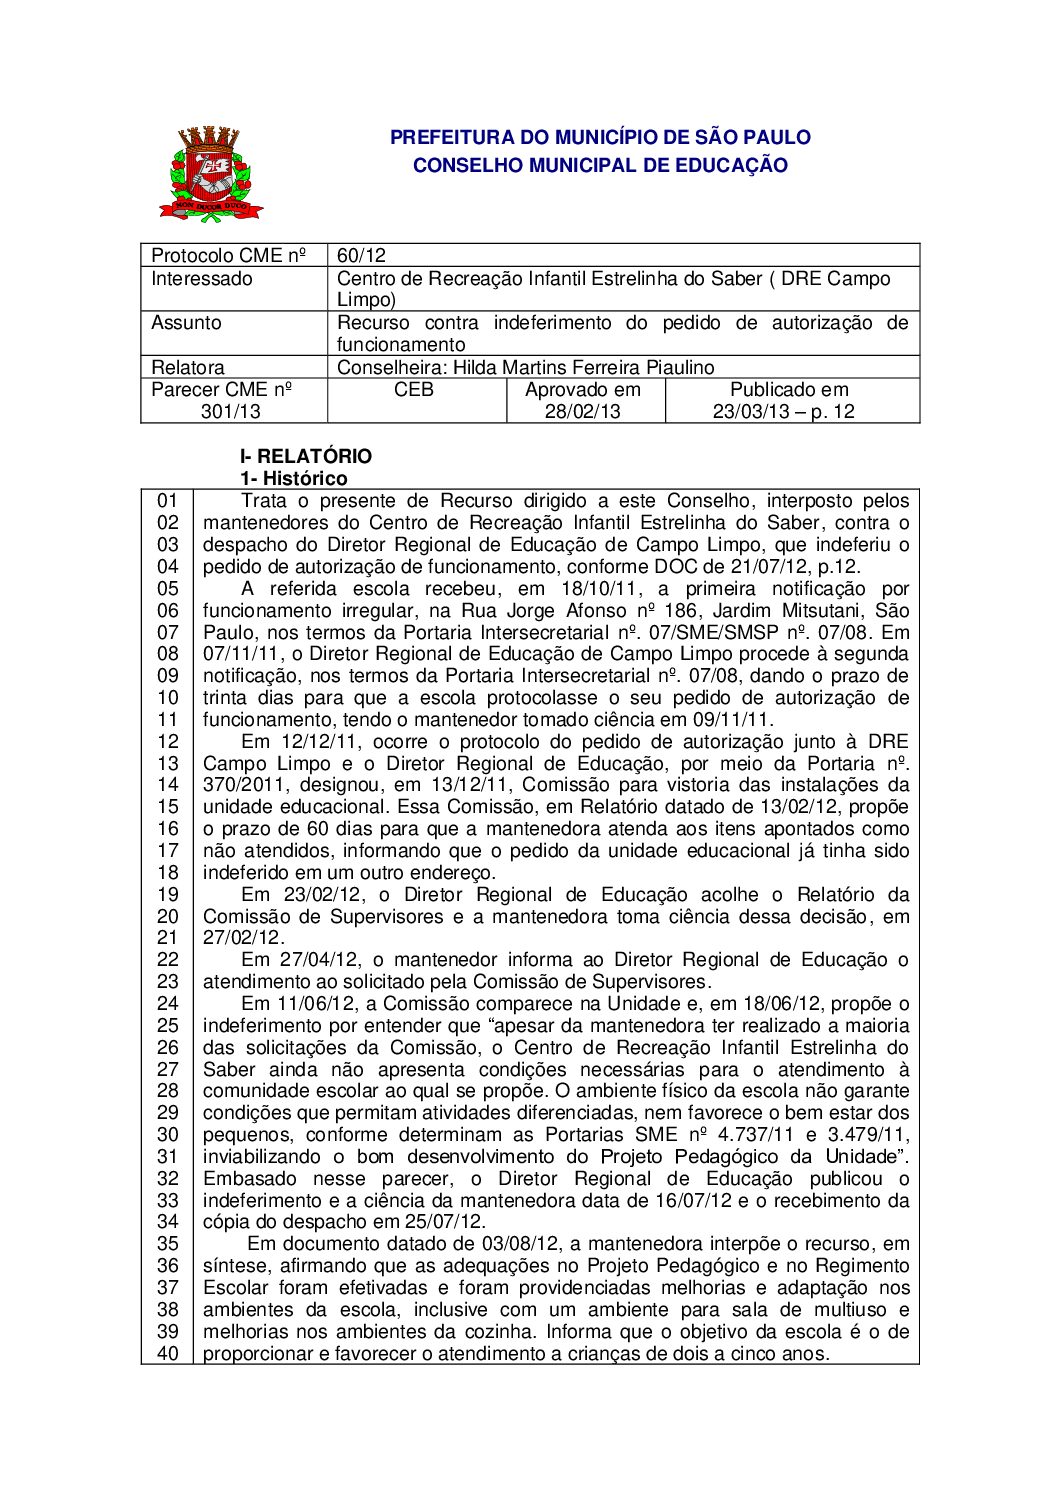 Parecer CME nº 301/2013 - Centro de Recreação Infantil Estrelinha do Saber ( DRE Campo Limpo) - Recurso contra indeferimento do pedido de autorização de funcionamento 